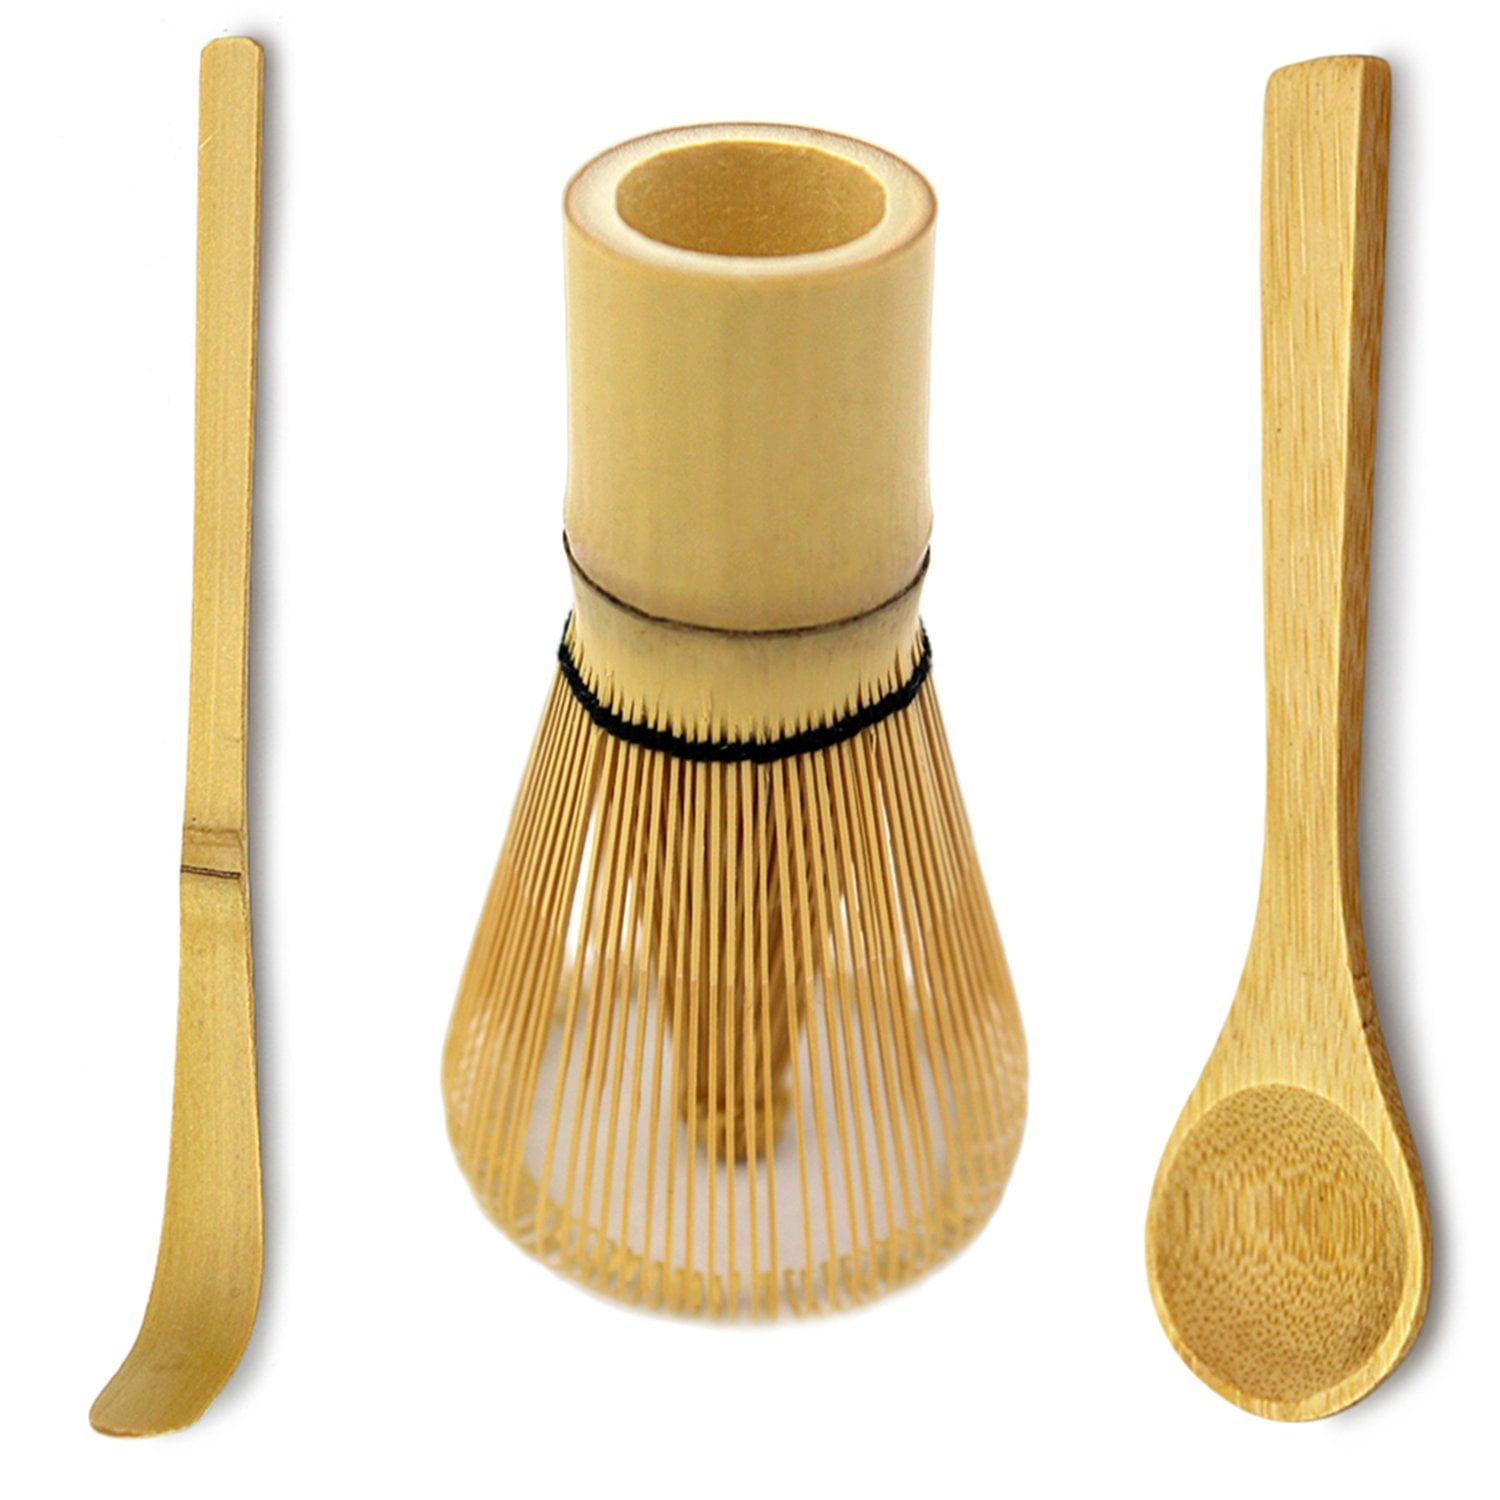 V! matcha bamboo tea scoop spoon tea tool coffee spoon handy tools gift